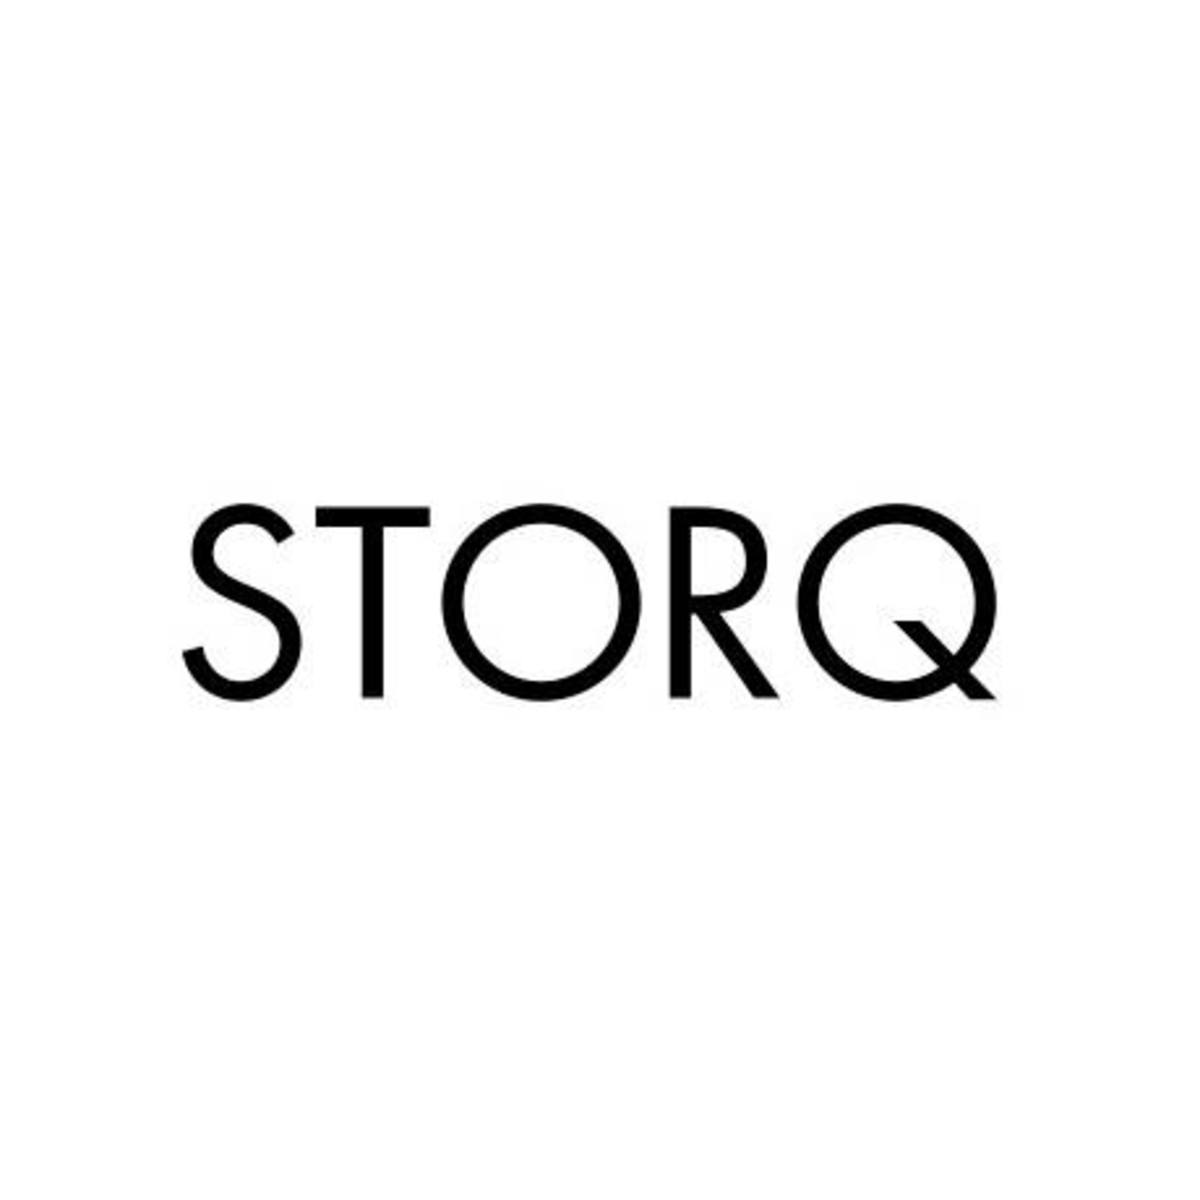 storq logo